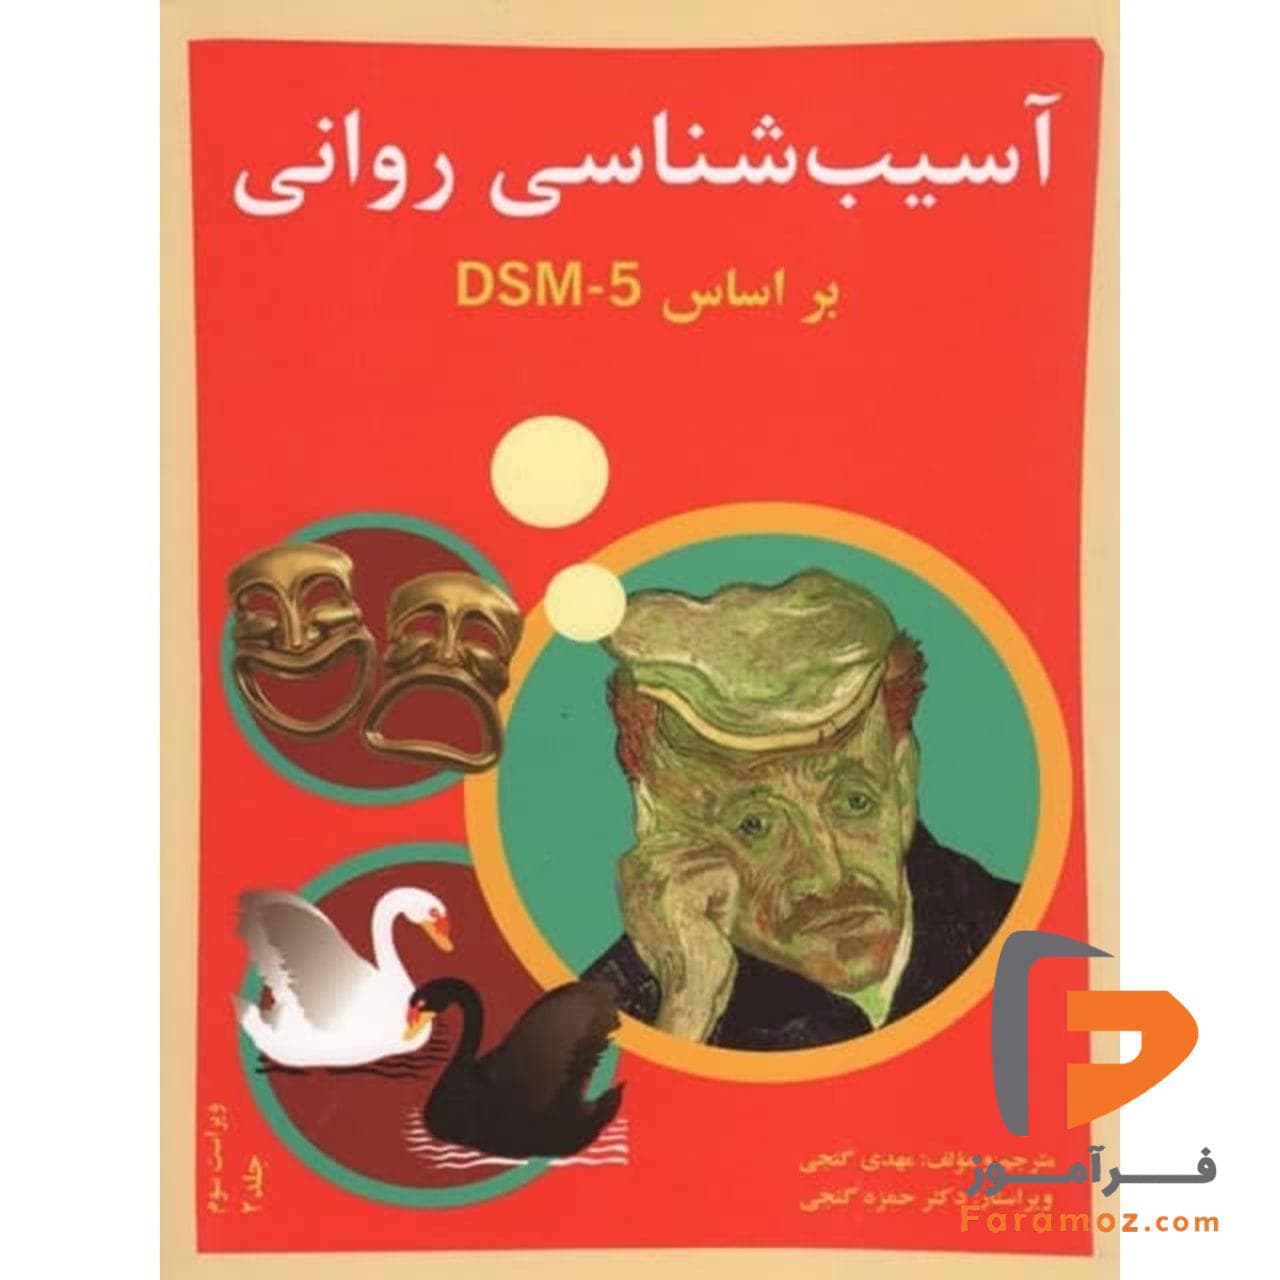 آسیب شناسی روانی براساس DSM - 5 حمزه گنجی جلد دوم